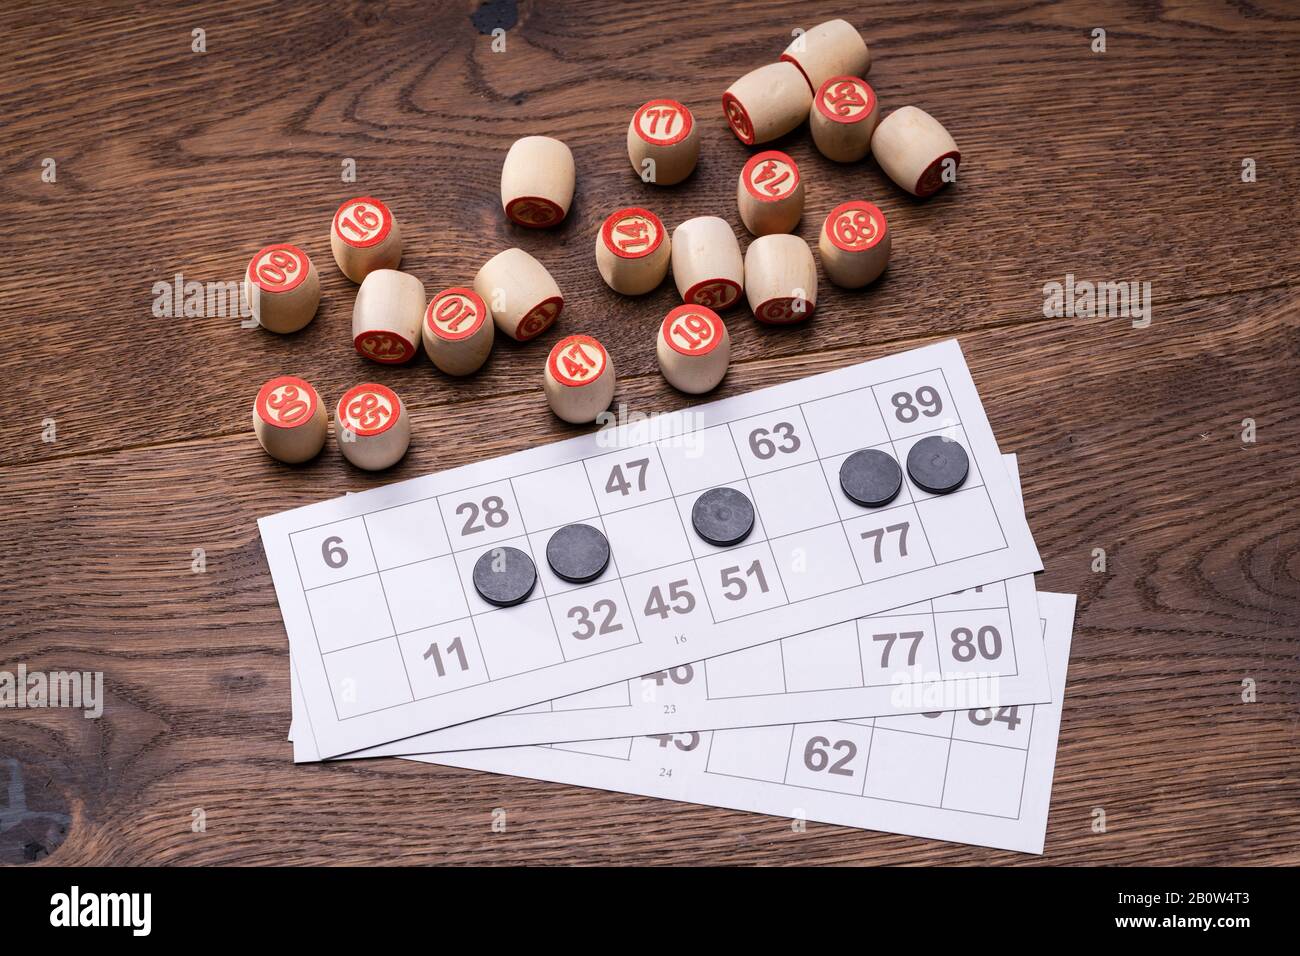 Jeu Lotto Avec Cartes Et Barils Sur La Table Banque D'Images